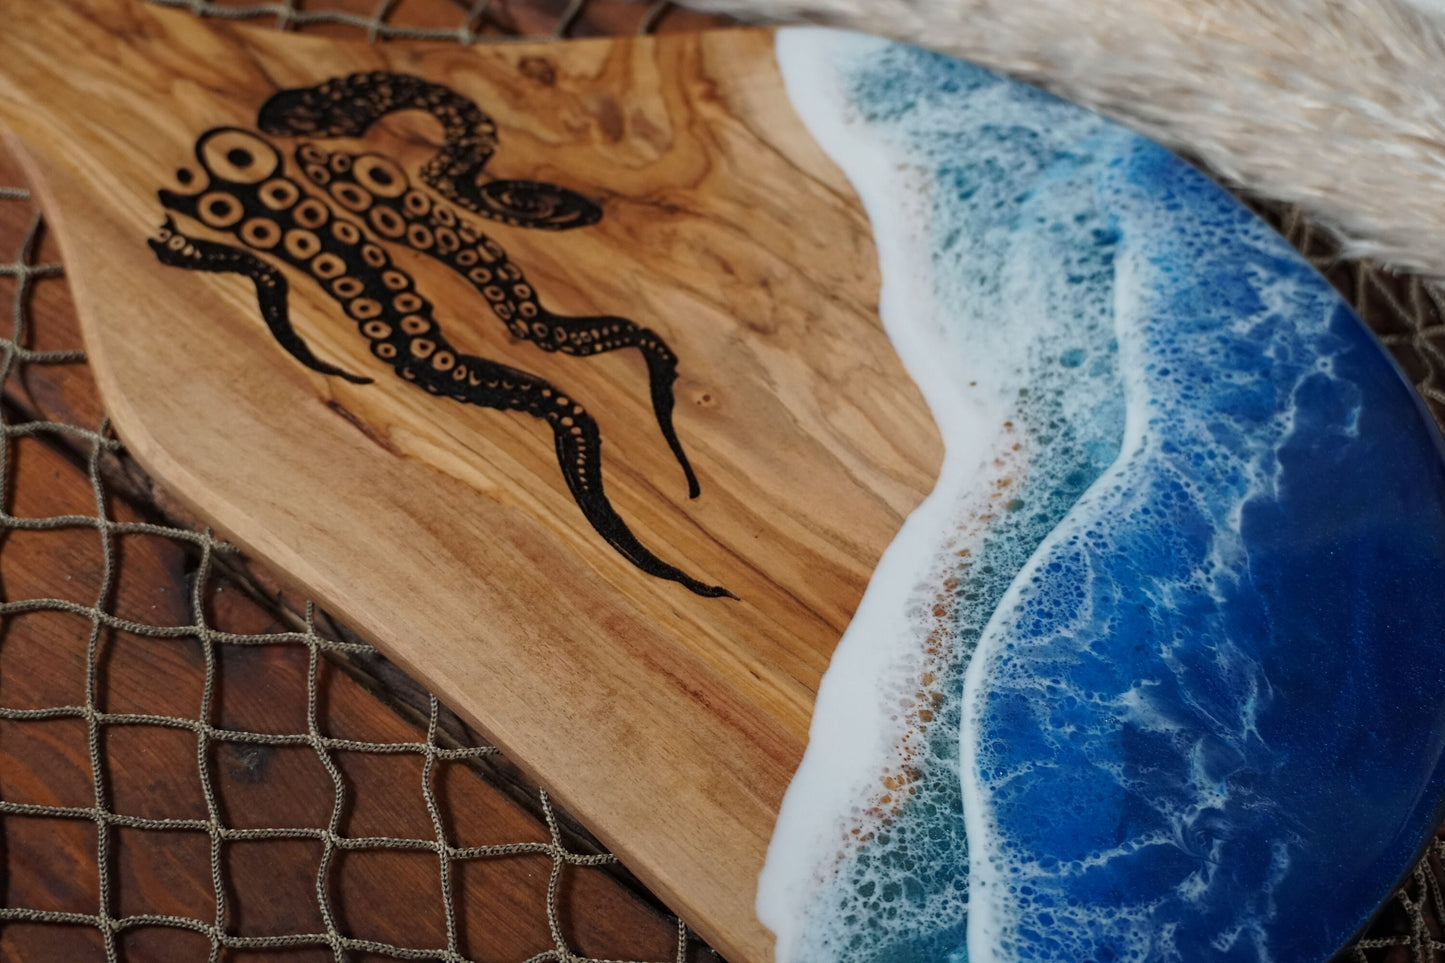 Kraken Ocean Waves Olive Wood Charcuterie Board/Serving Board